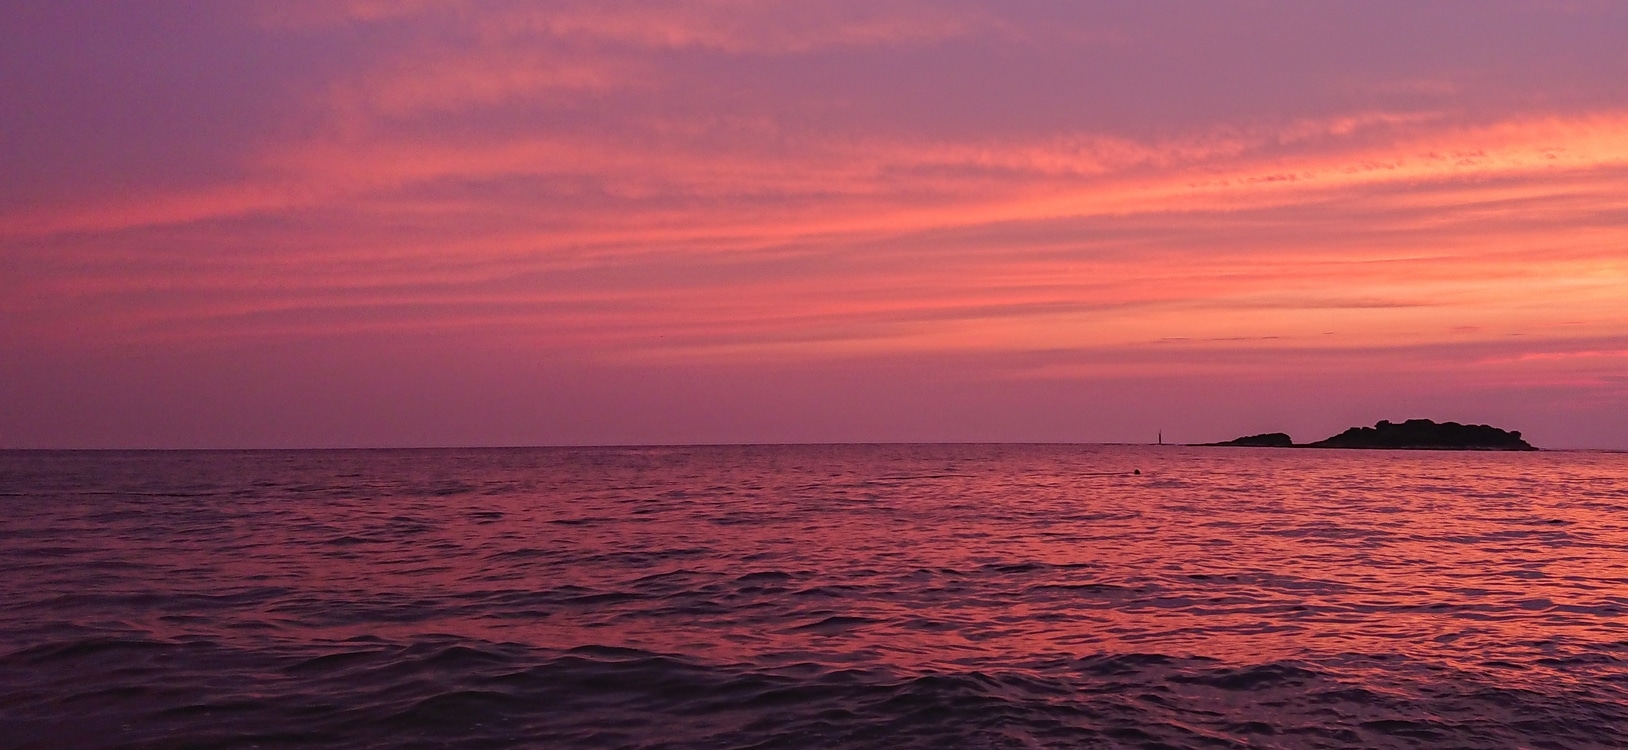 mare rosso tramonto fiverr